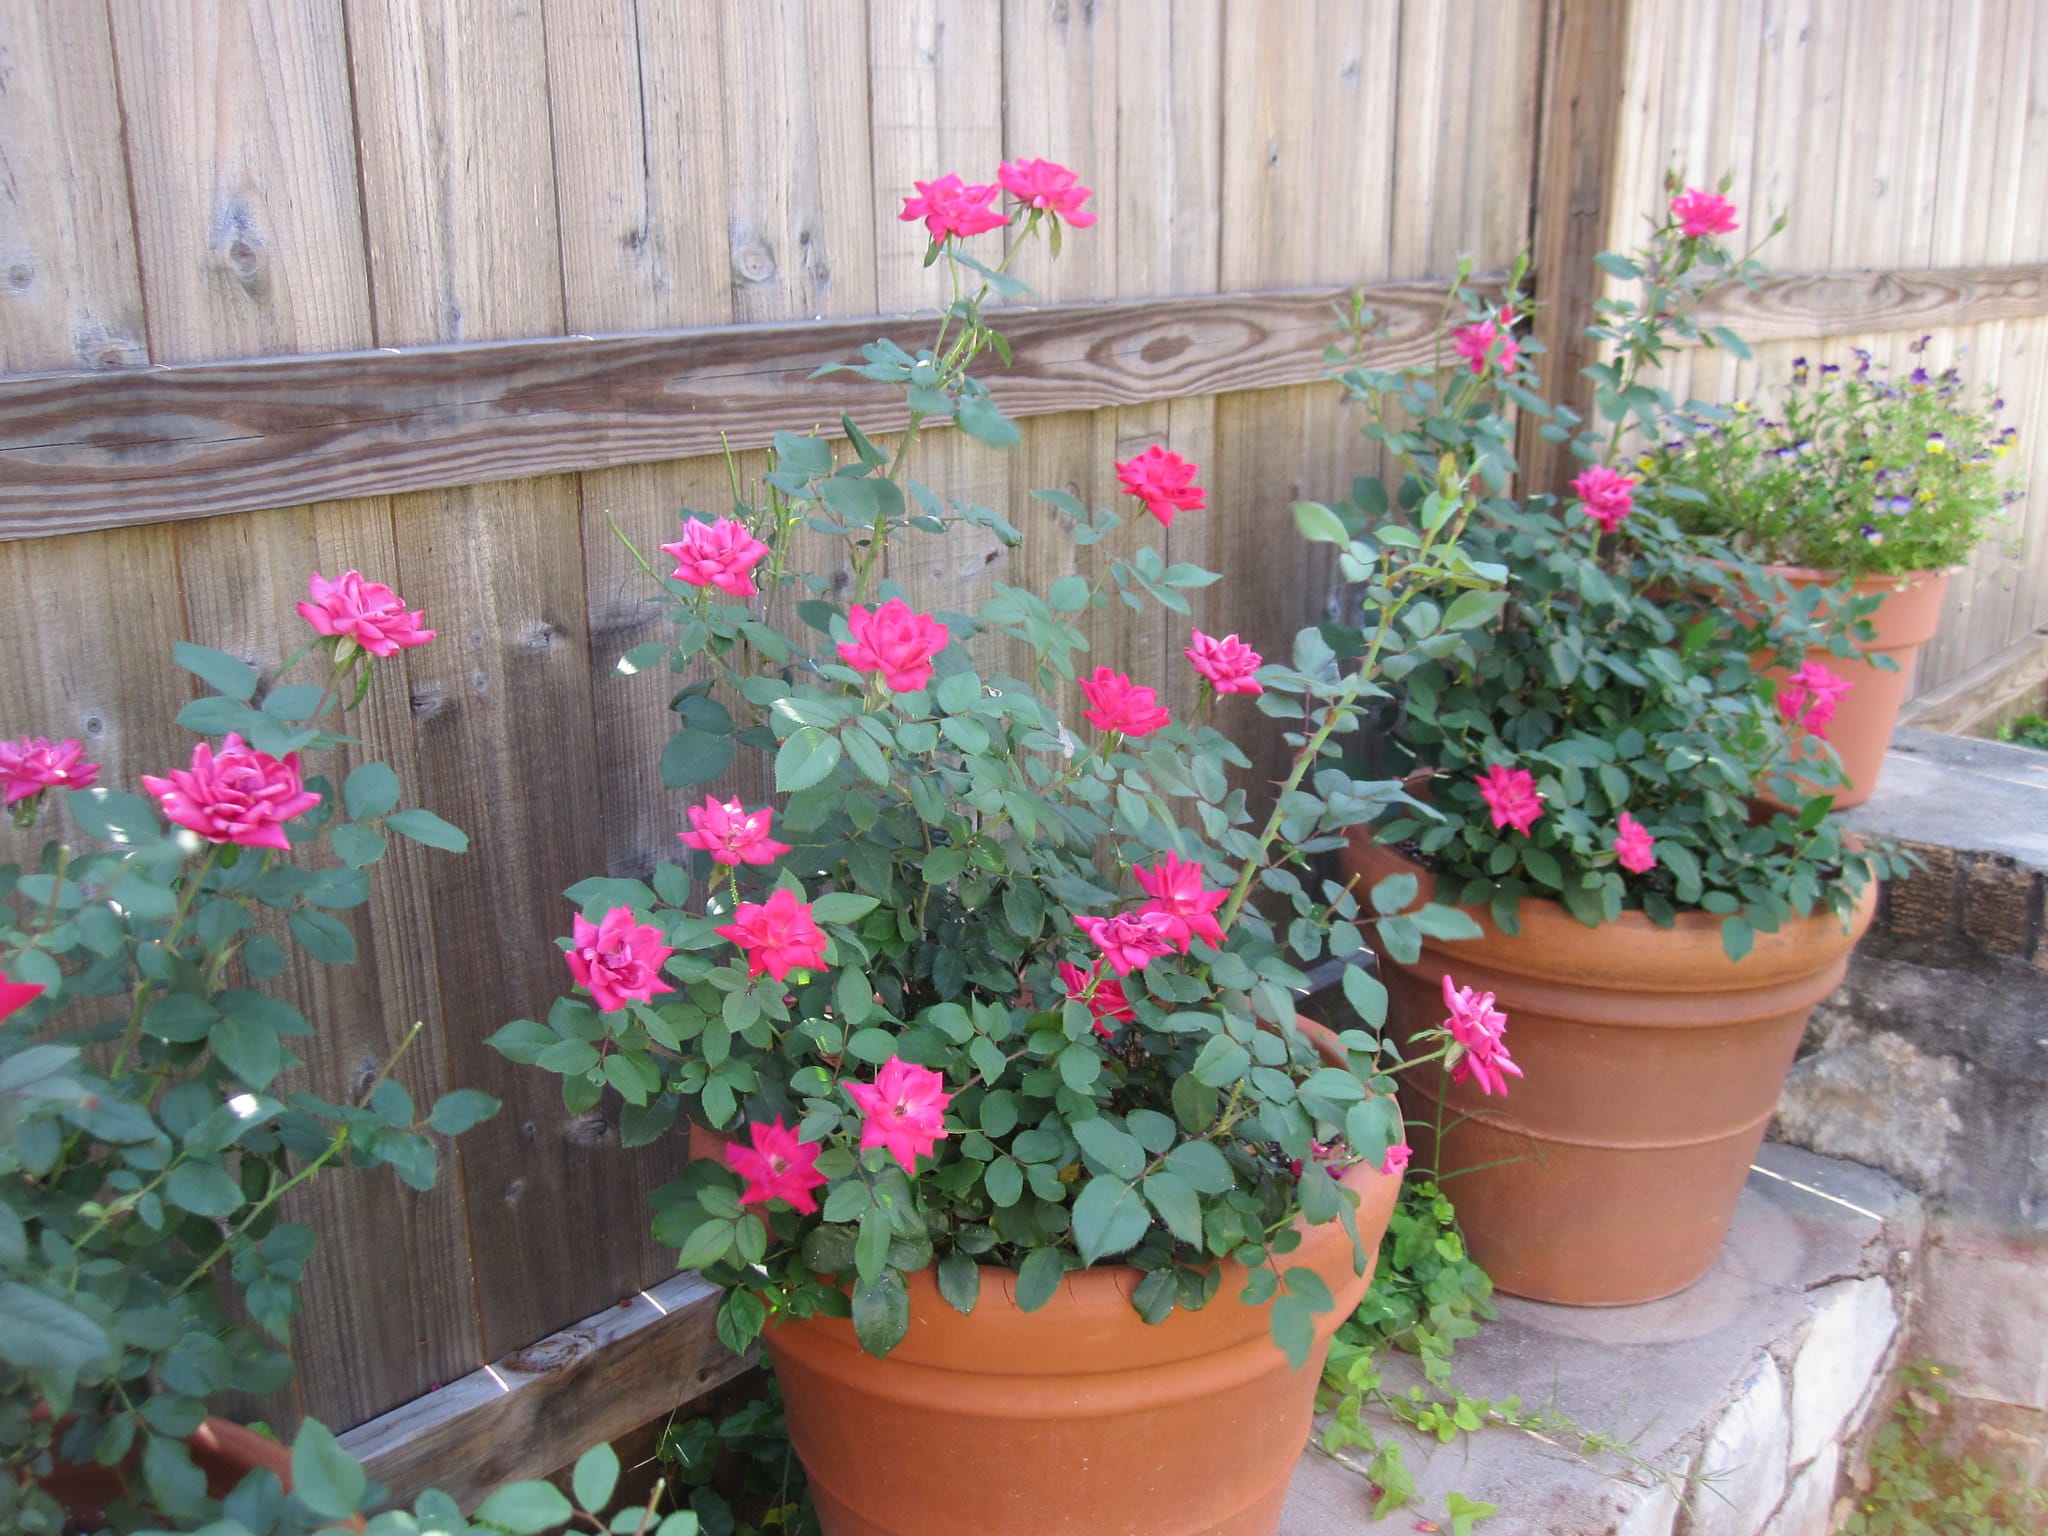 Rosenbusker kan plantes i potter om våren